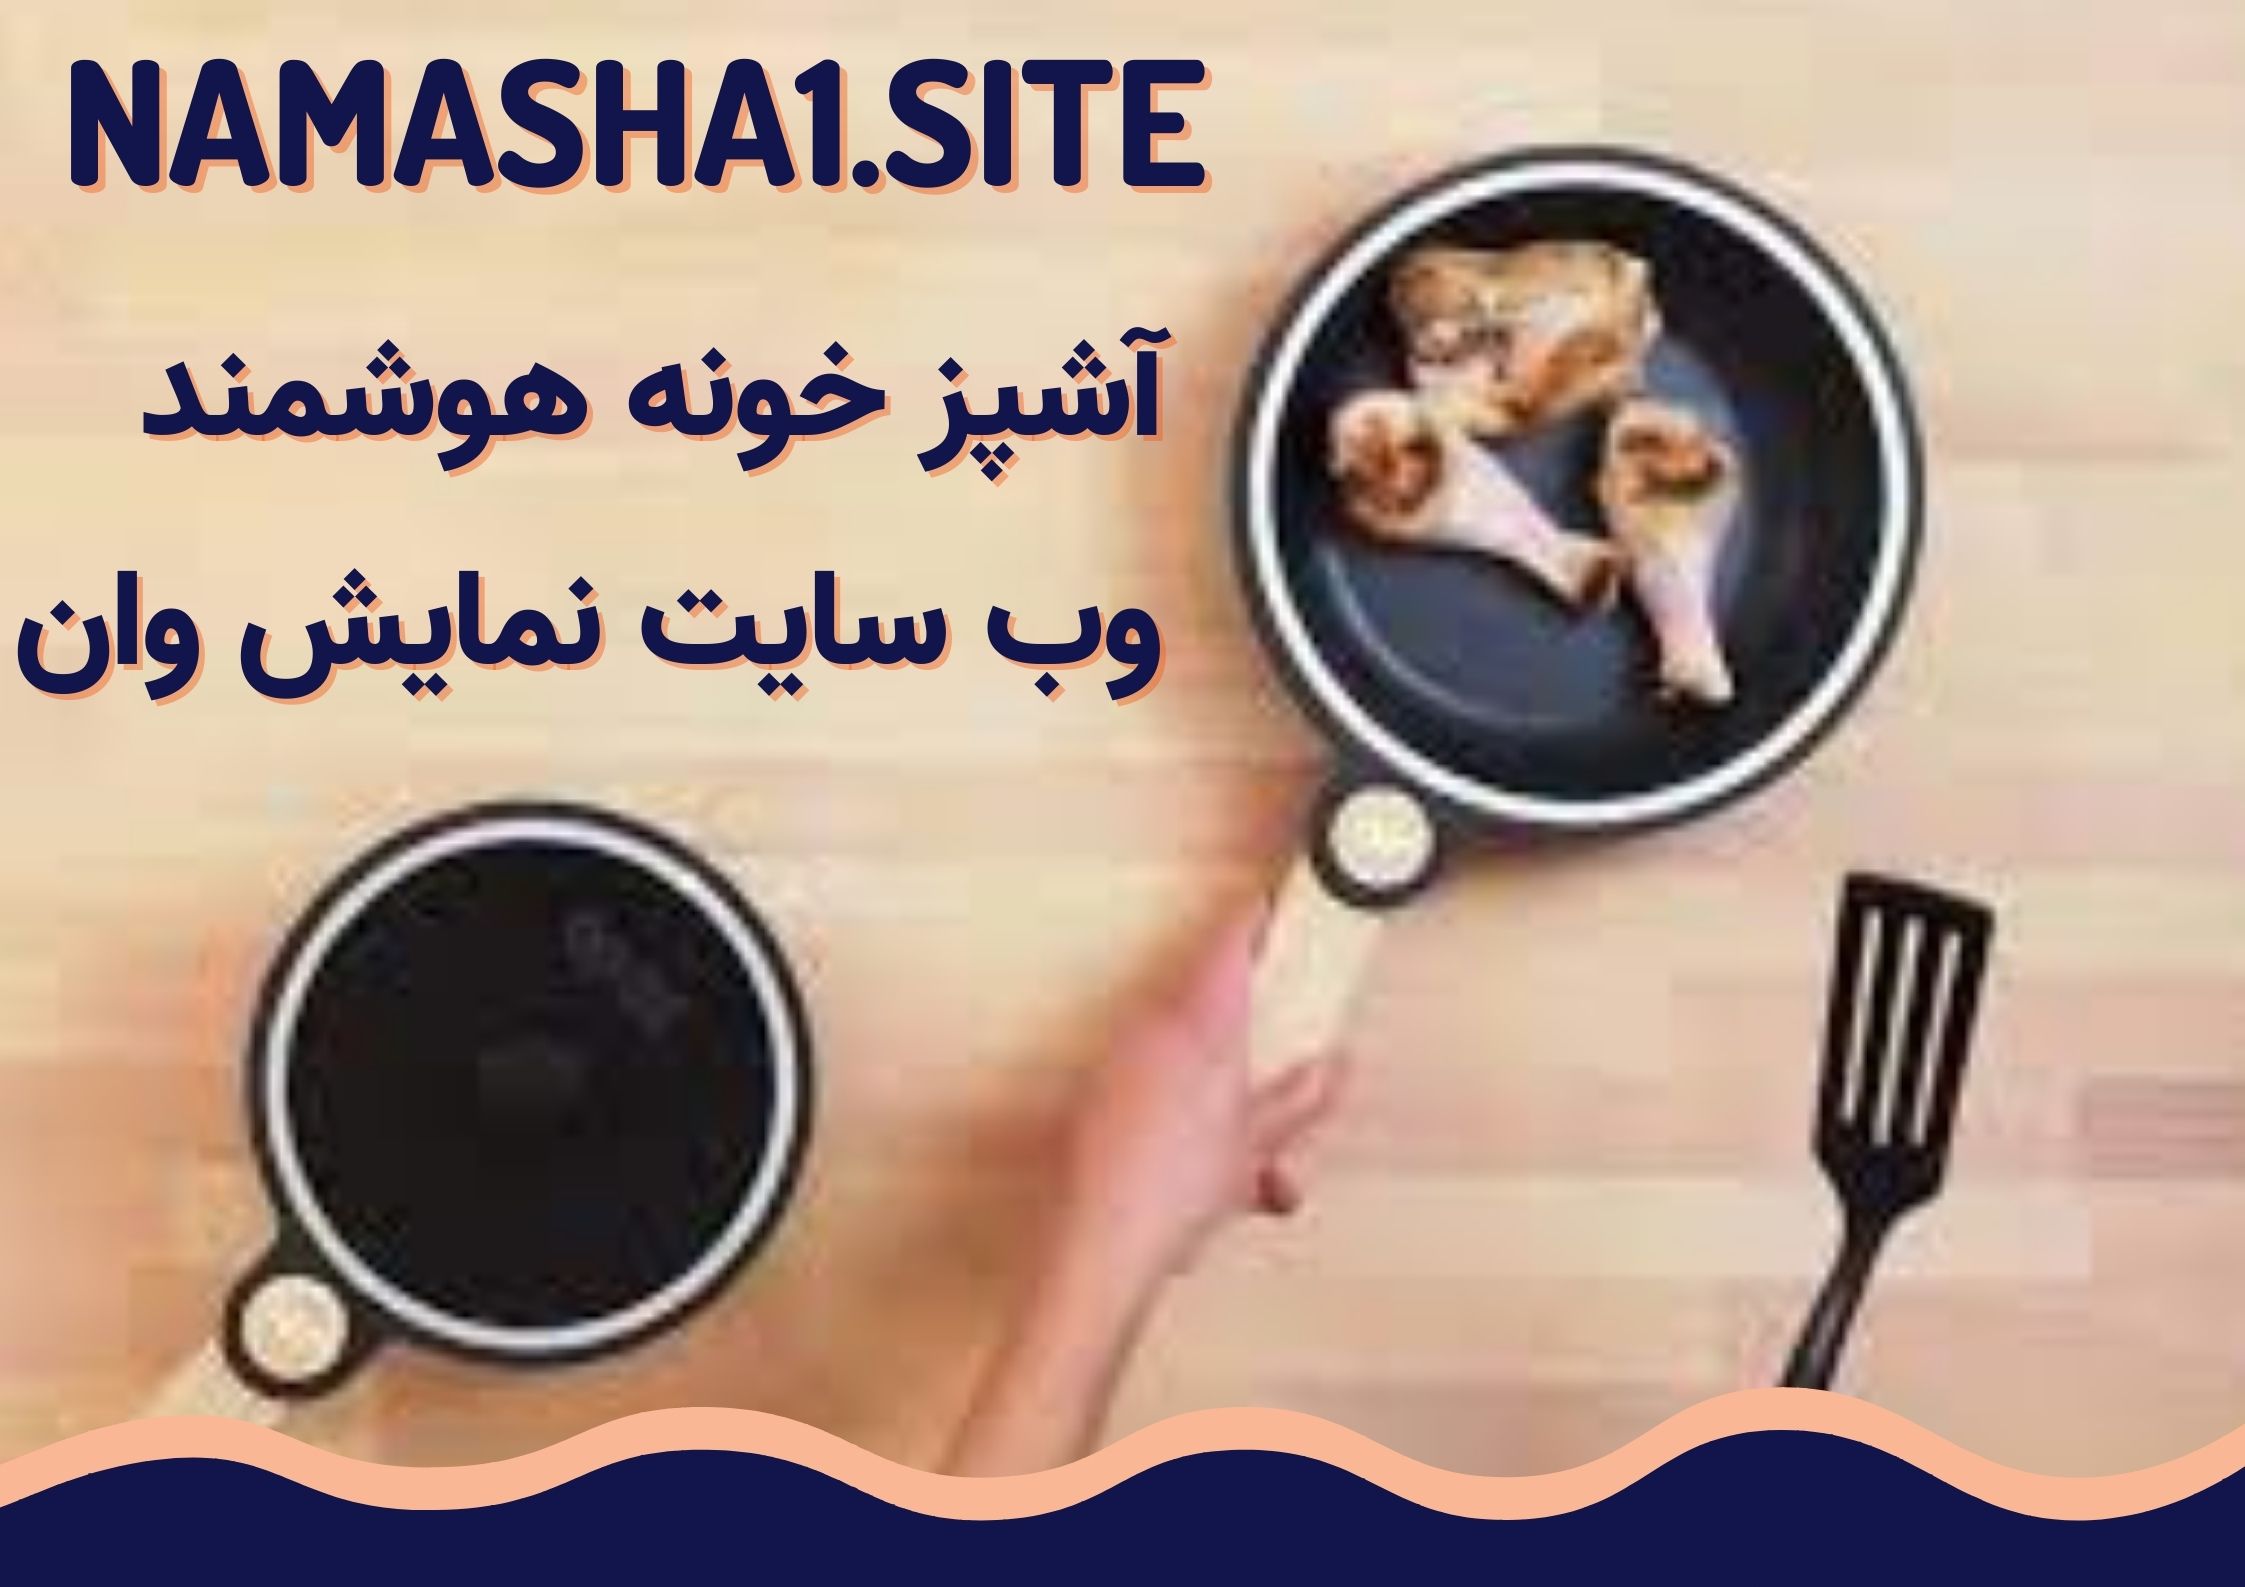  http://namasha1.rozblog.com/آشپزخانه-هوشمند-و-مزایای-استفاده-از-آن.html